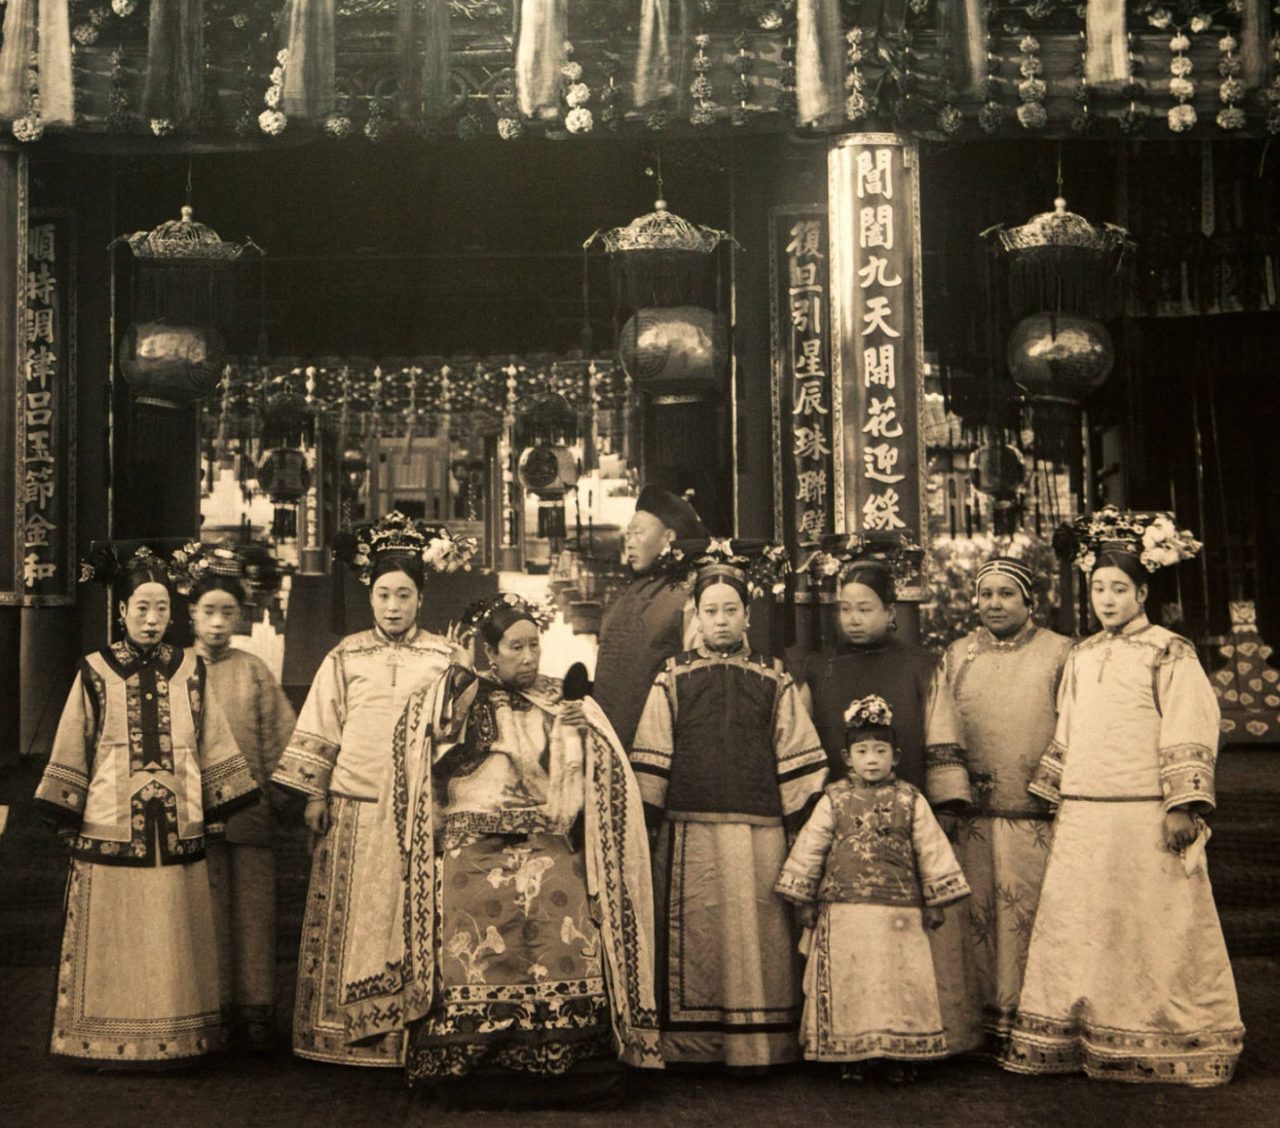 Histoire du Kung Fu : La dynastie Qing, période de répression